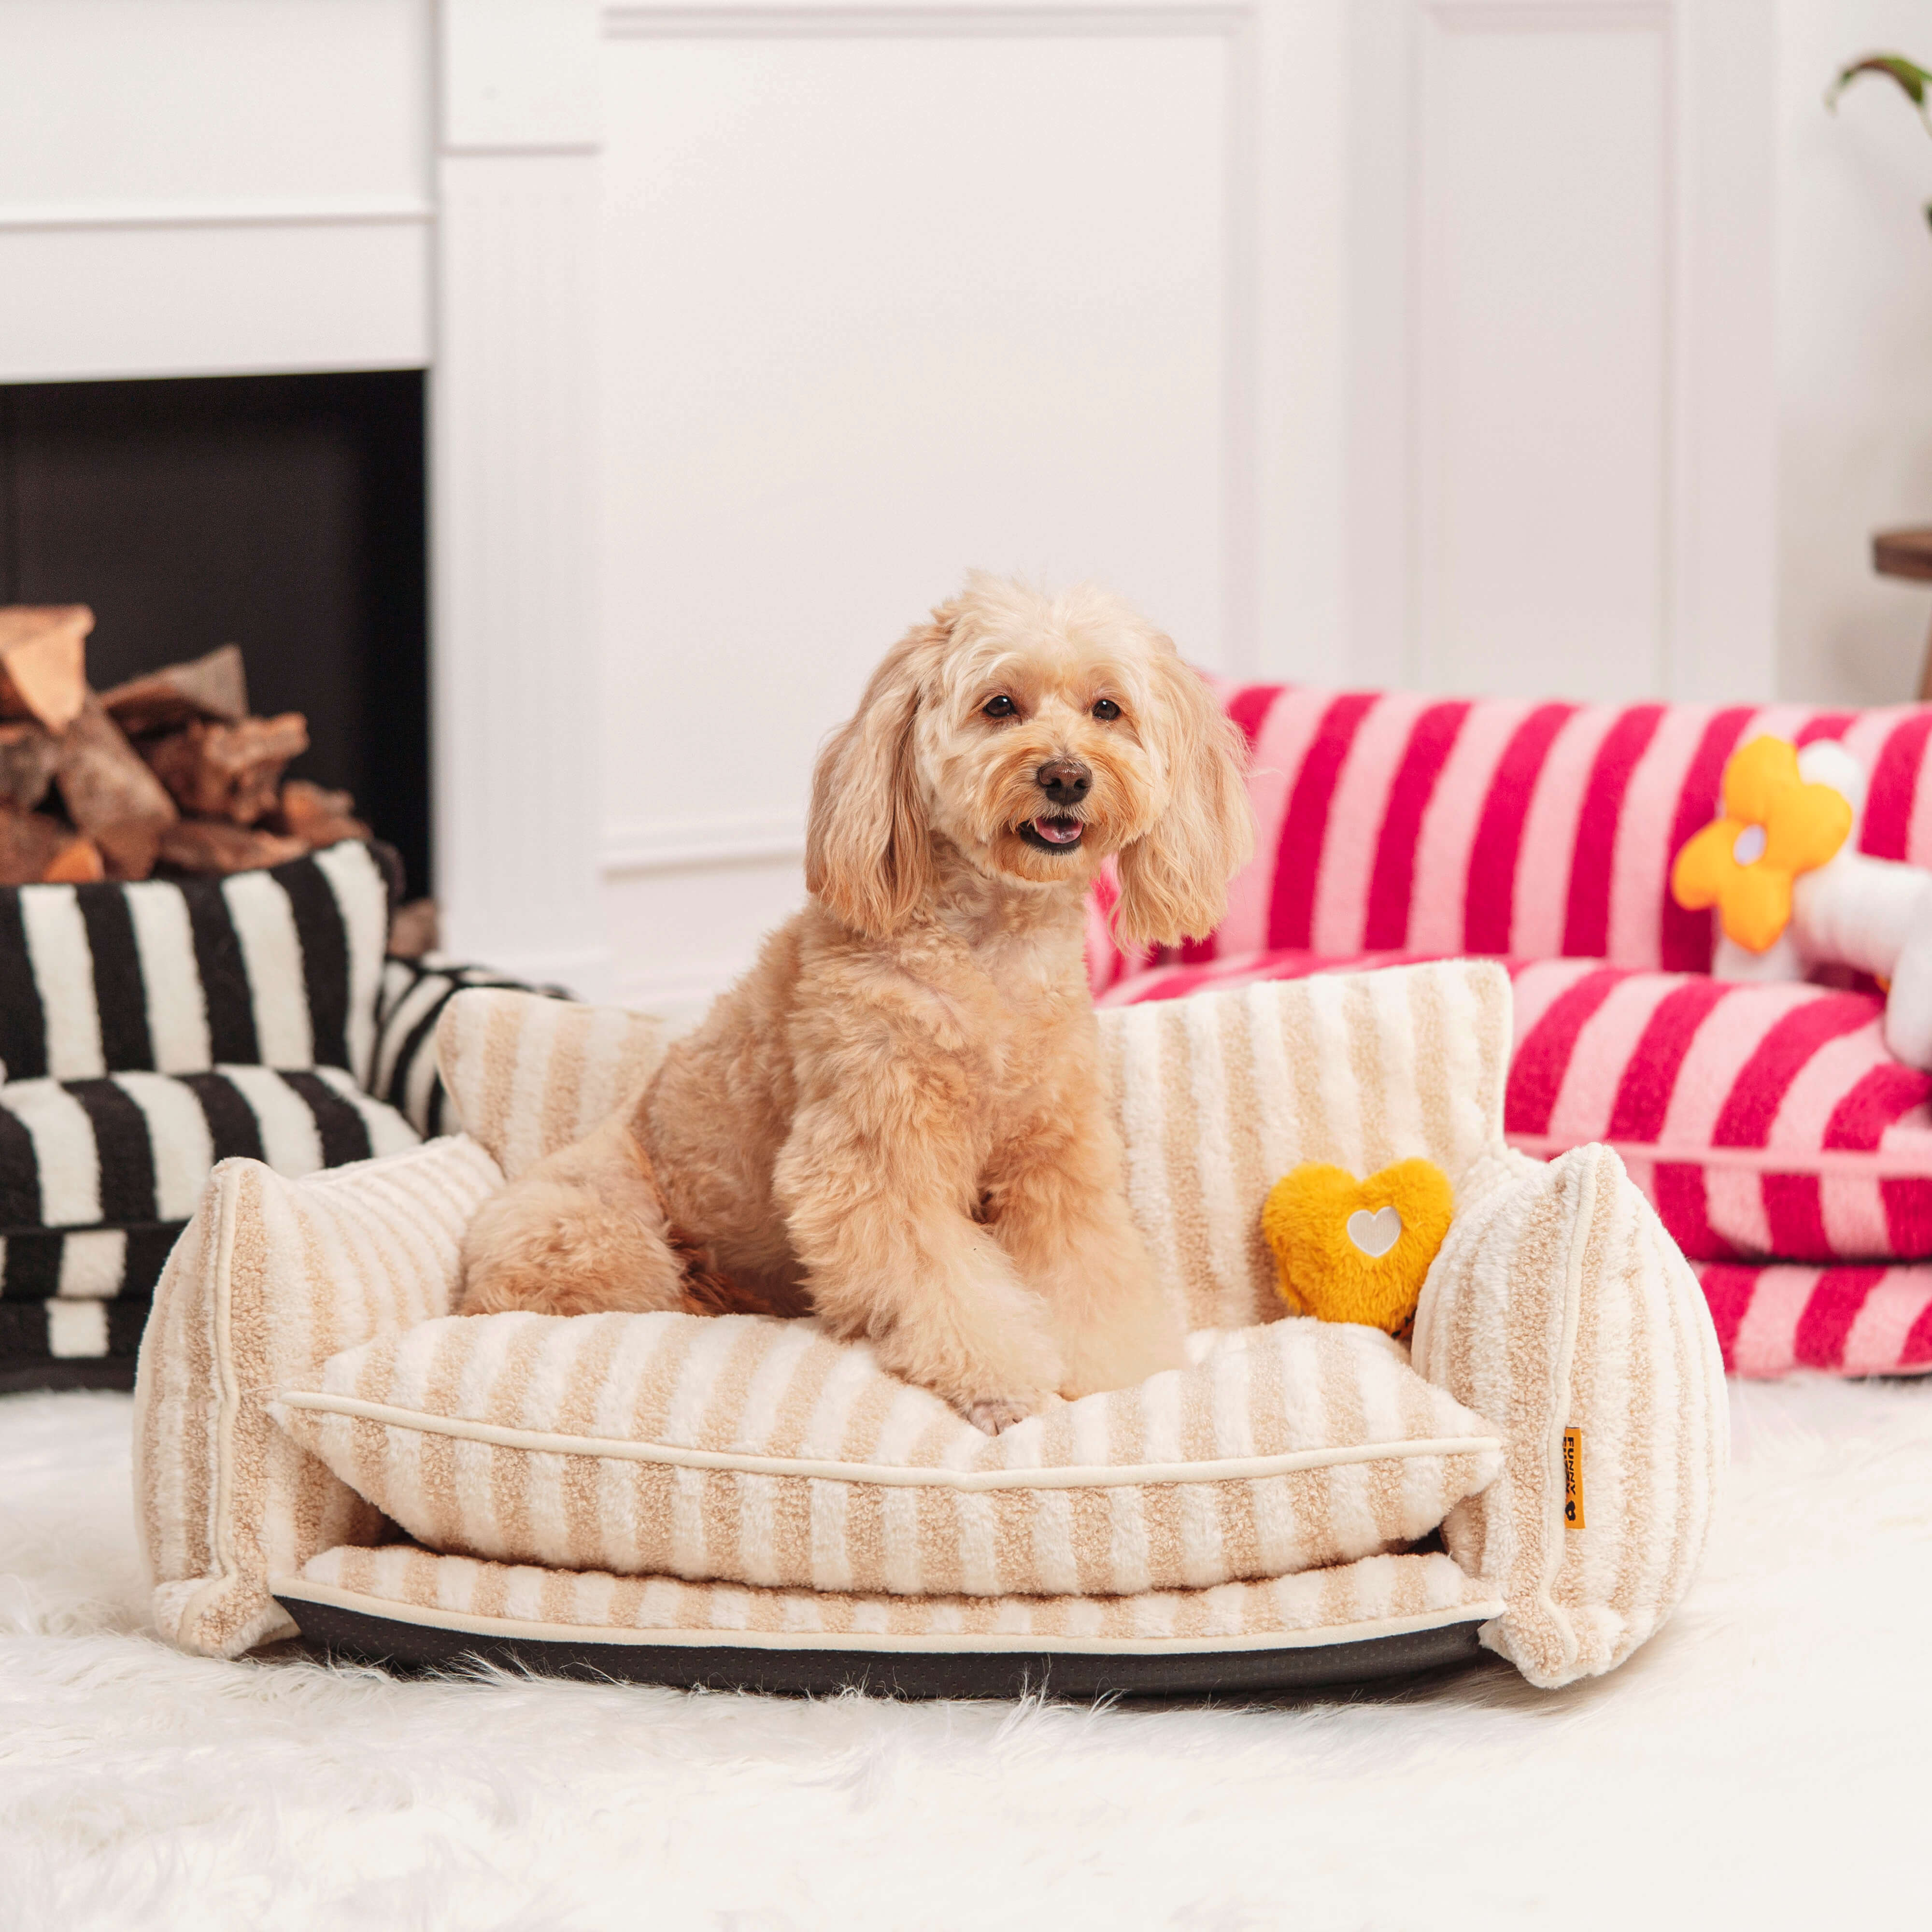 Sofá cama para perros y gatos de doble capa de lana de cordero sintética a rayas de moda